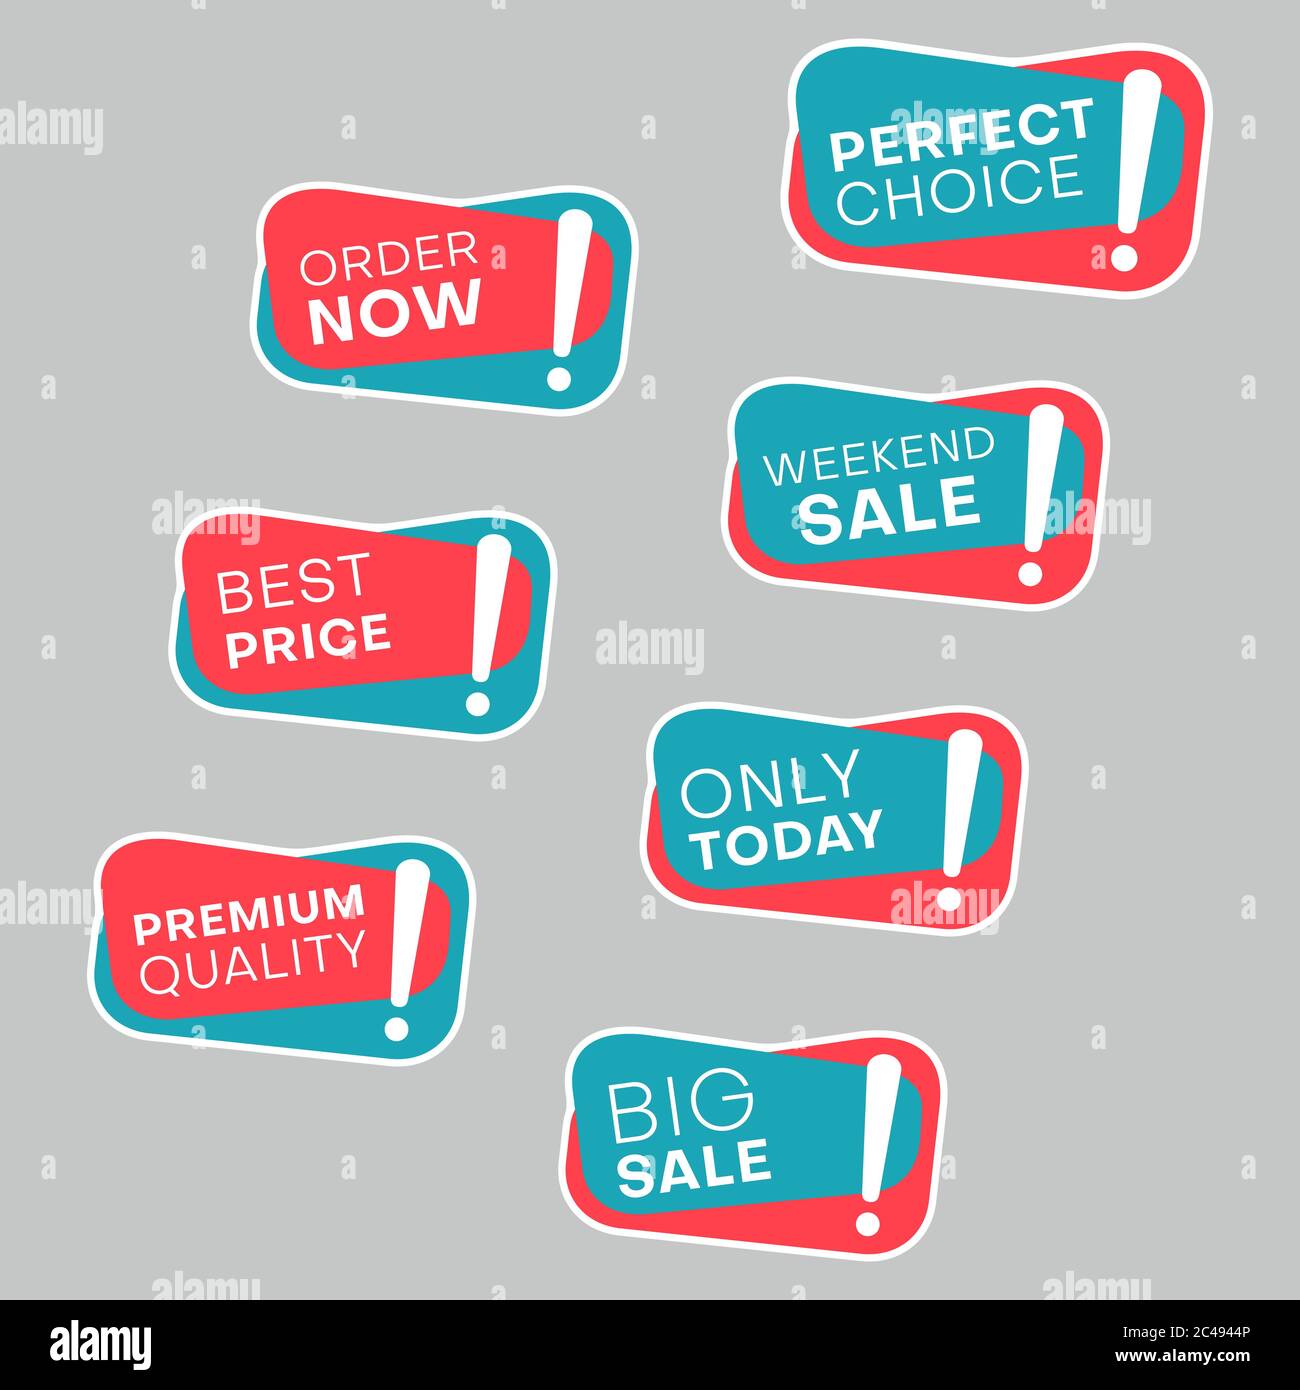 Premium Vector  Big sale discount best deal best price new offer